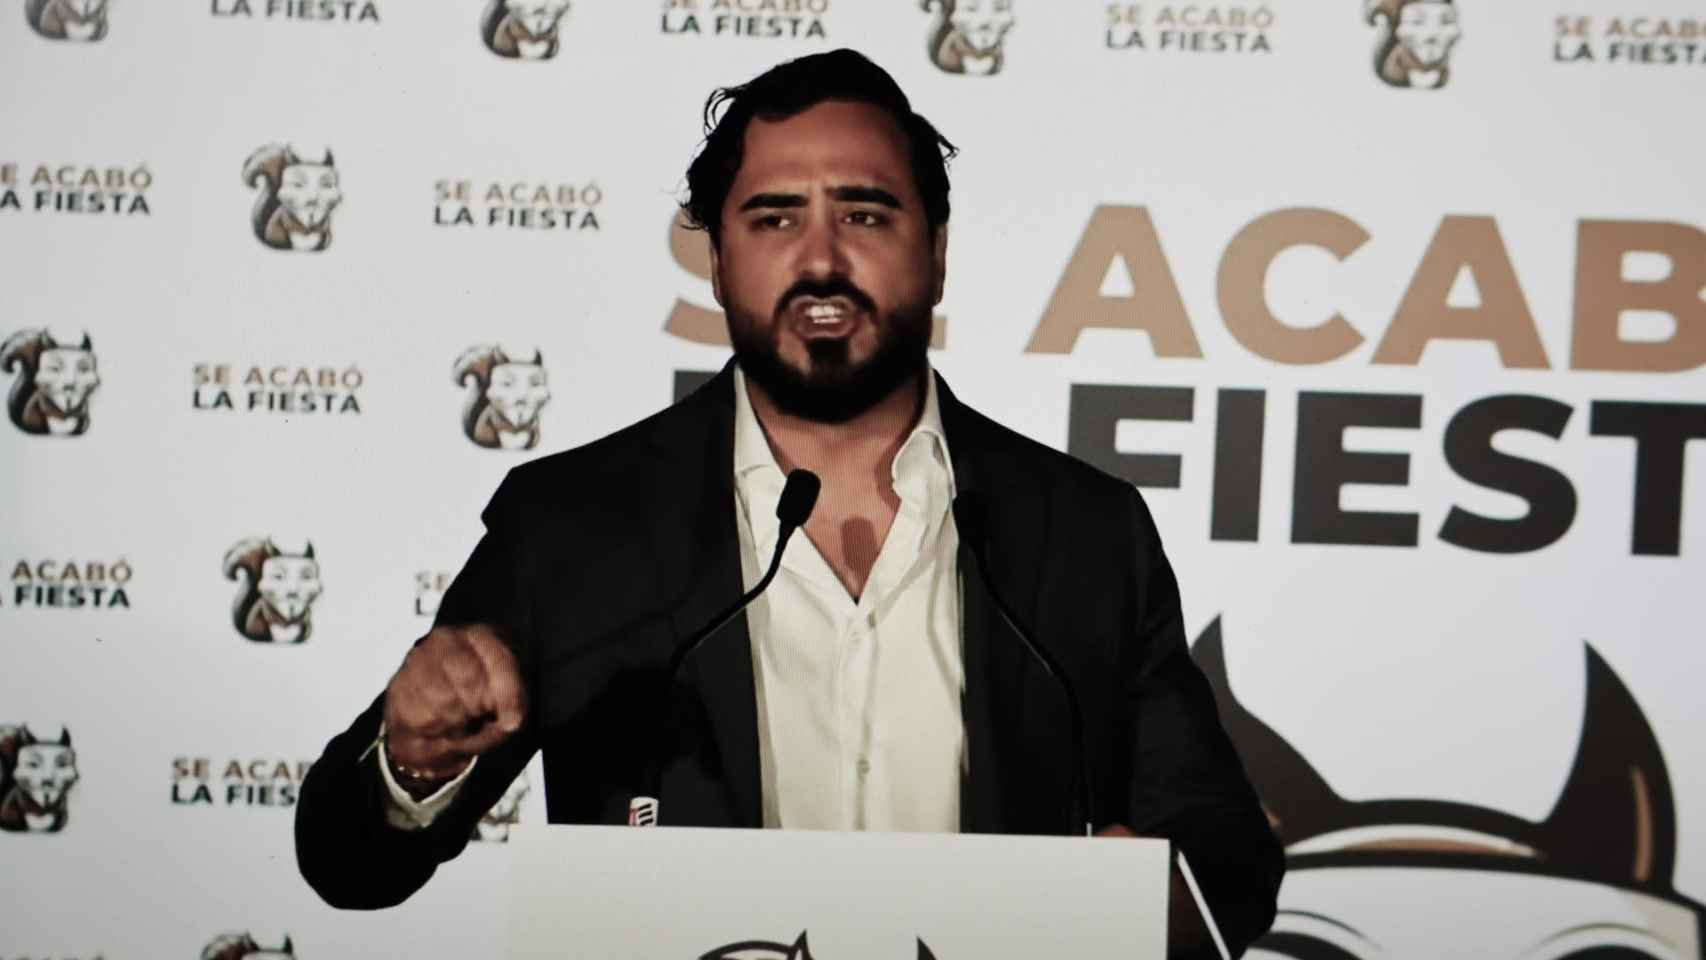 Alvise Pérez, líder de la agrupación Se Acabó la Fiesta, irrumpe en la Eurocámara como sexta fuerza política.